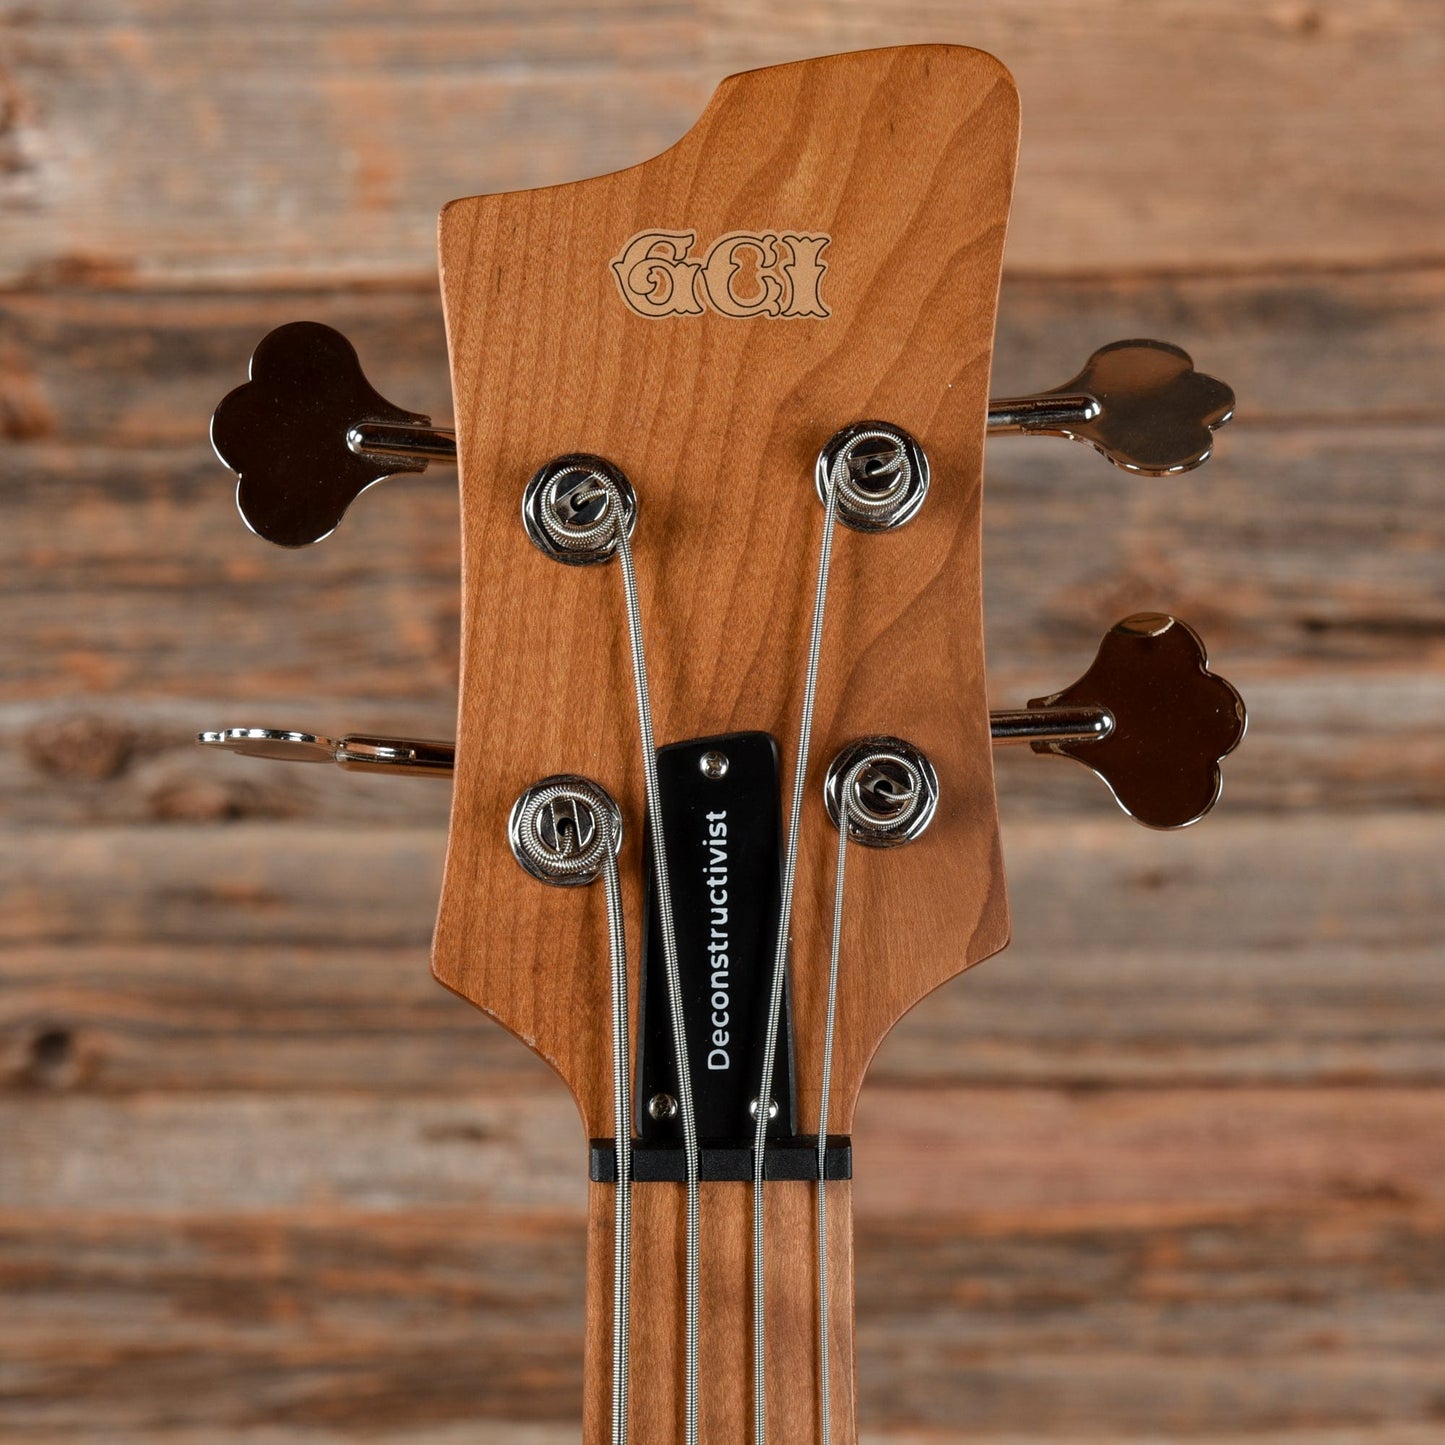 God City Instruments Deconstructivist Bass Red Bass Guitars / 4-String